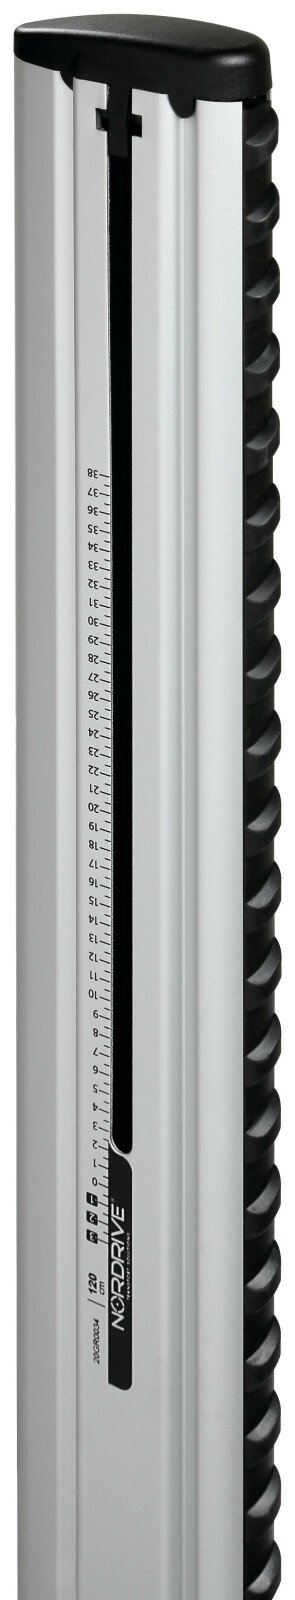 Silenzio, pair of aluminium roof bars - L - 128 cm thumb